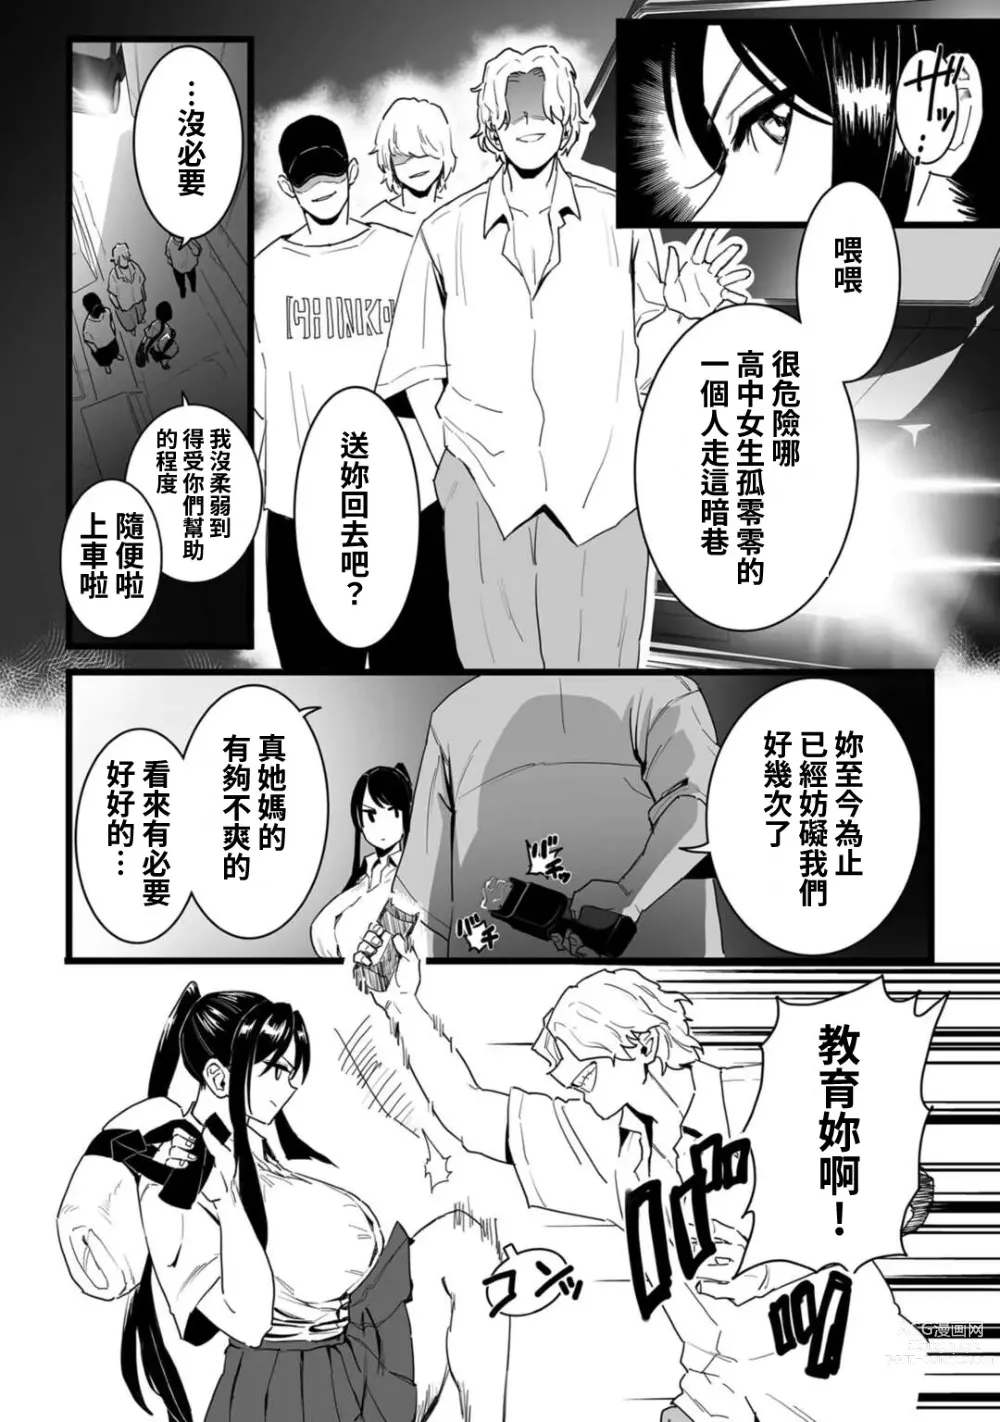 Page 5 of manga Shushou, Otsu!